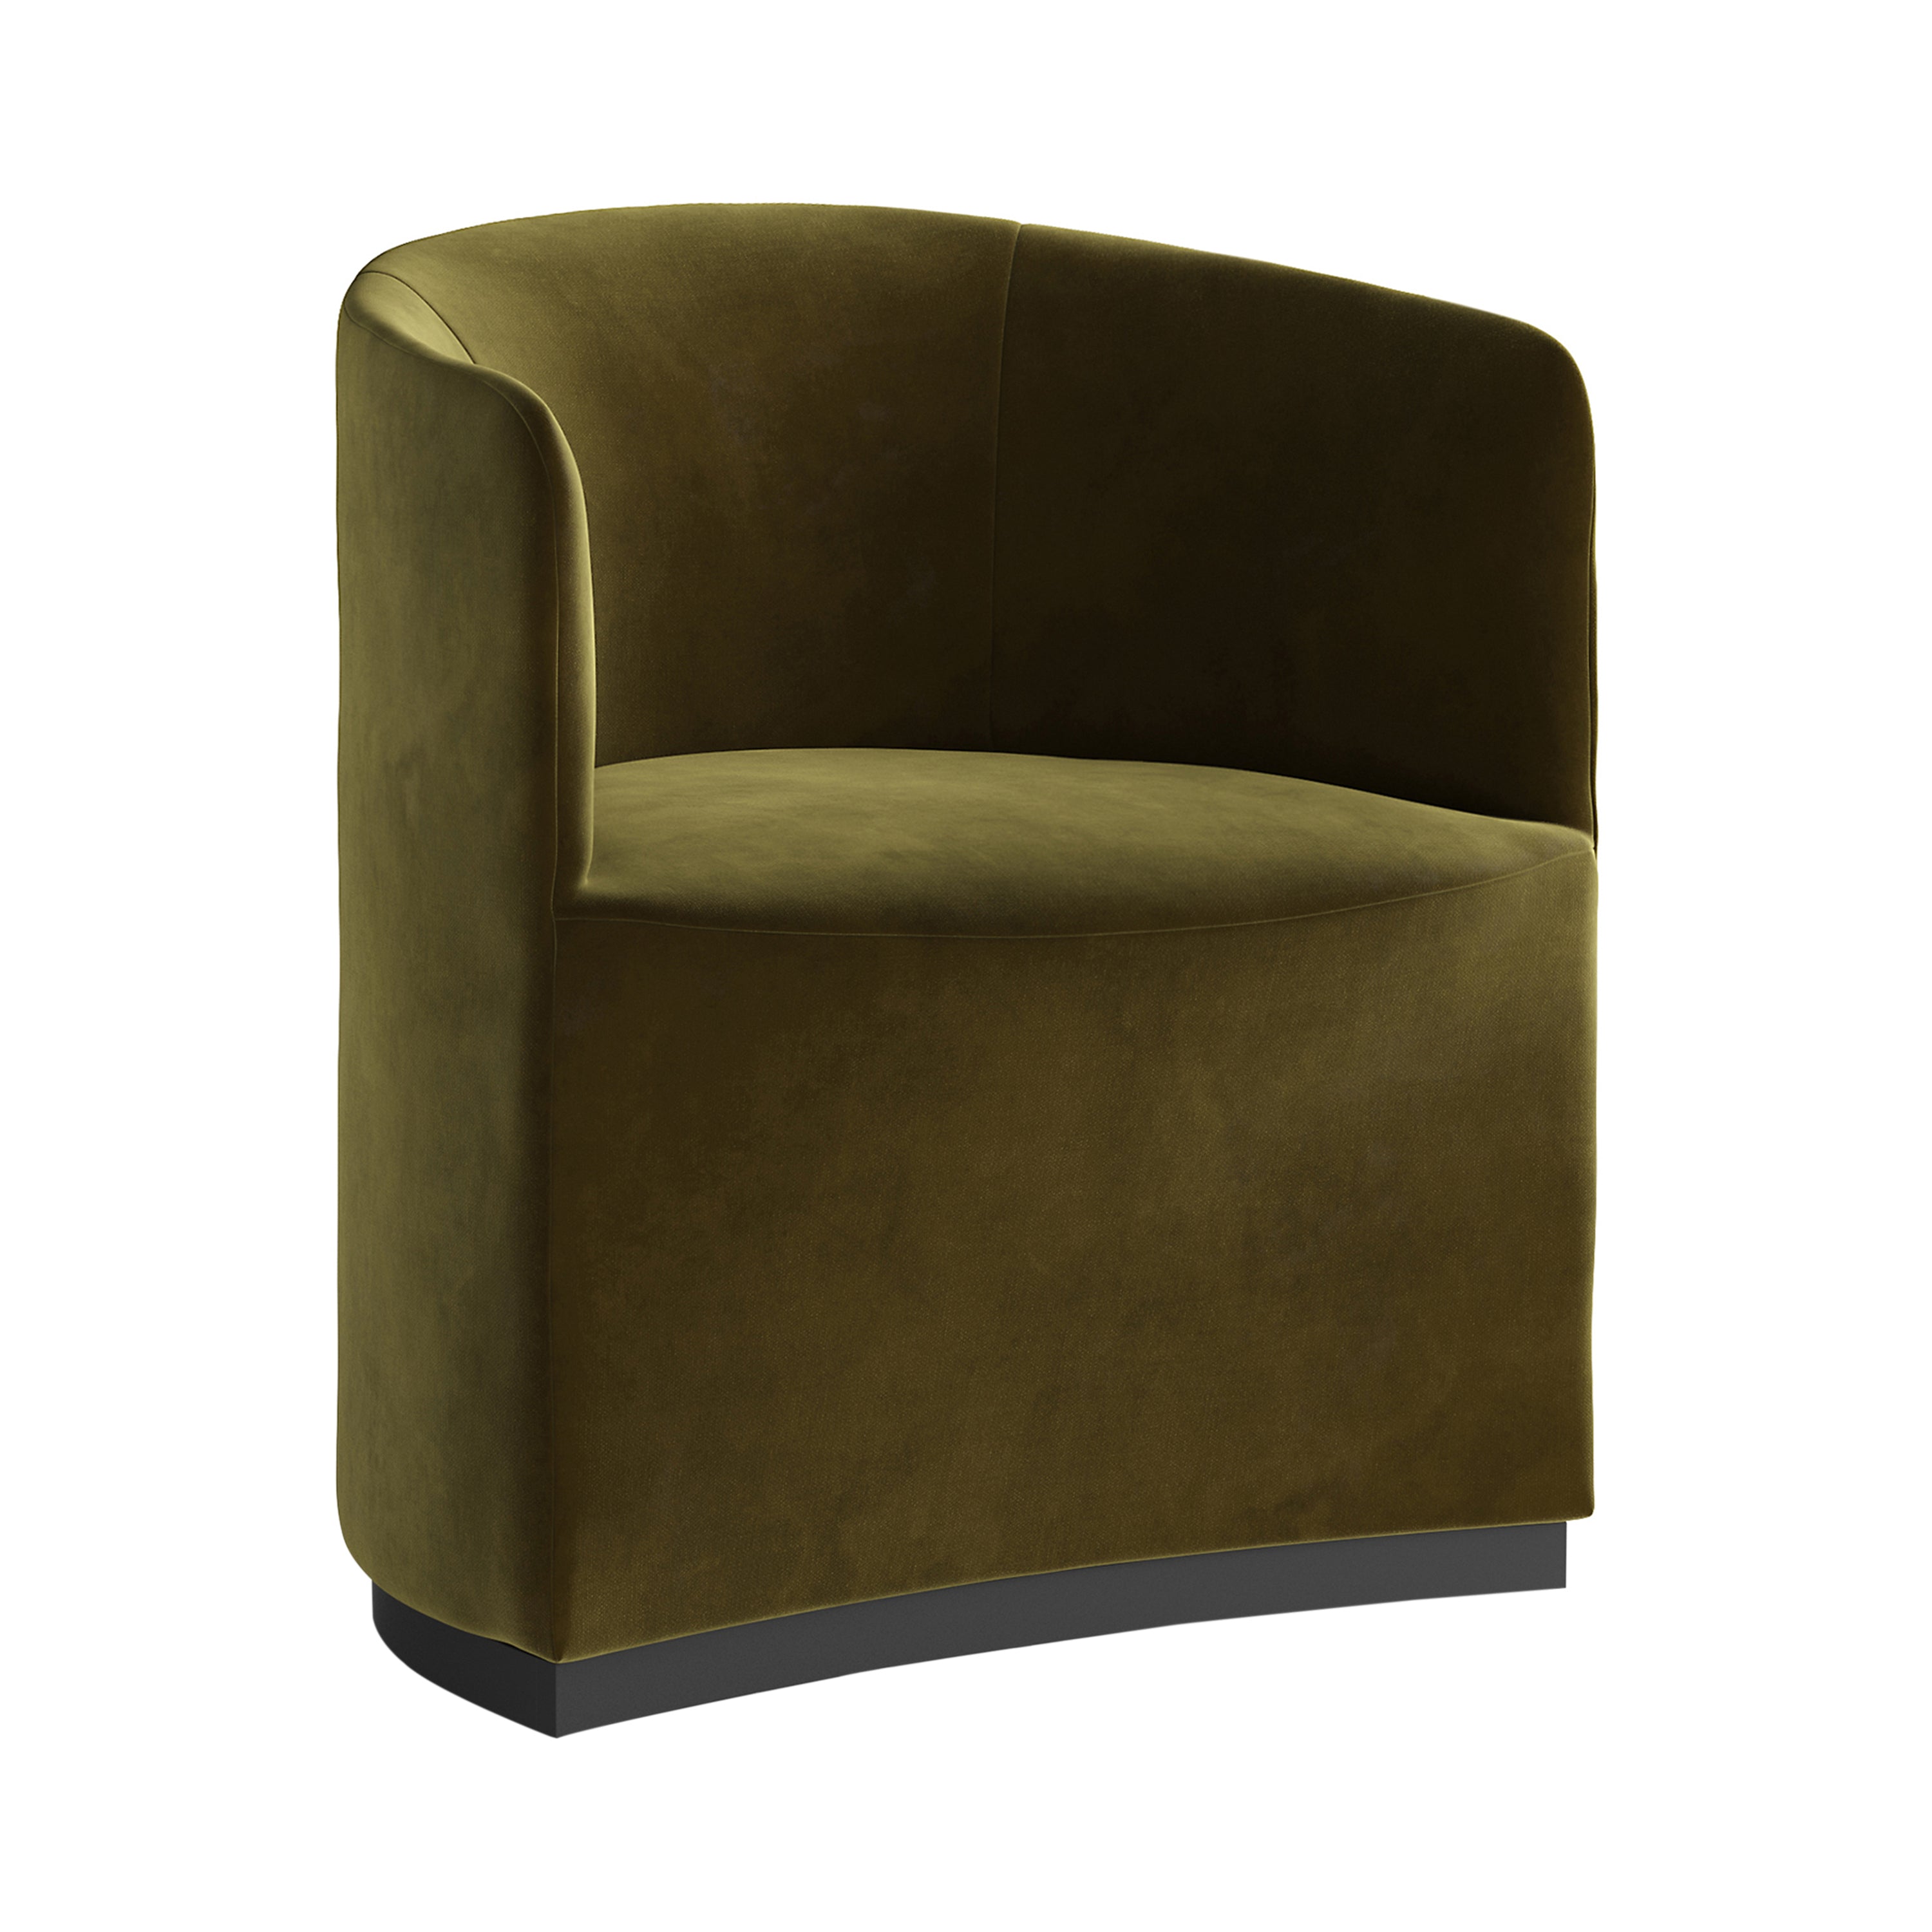 Tearoom Club Chair: City Velvet 031